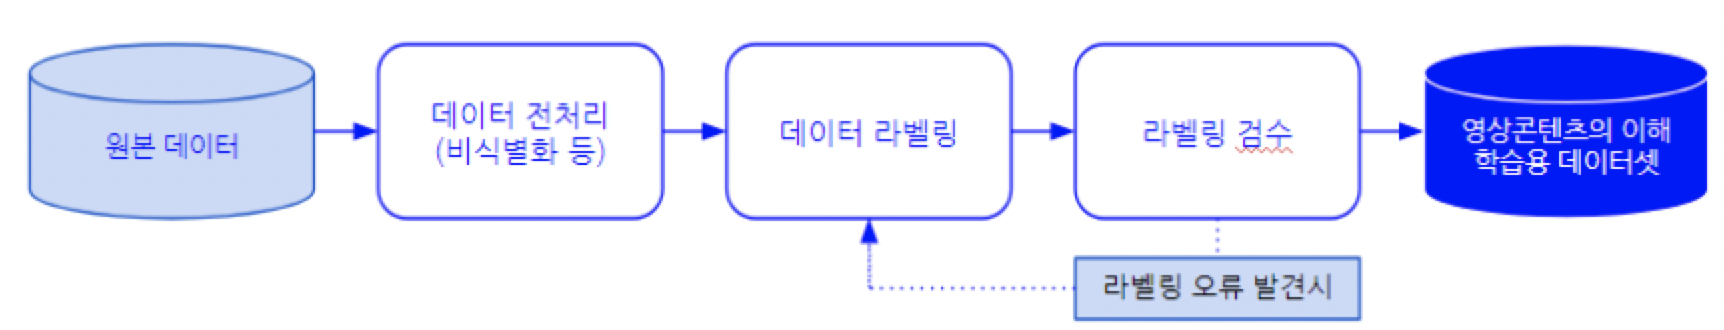 영유아 교육 영상콘텐츠 방송- 소개